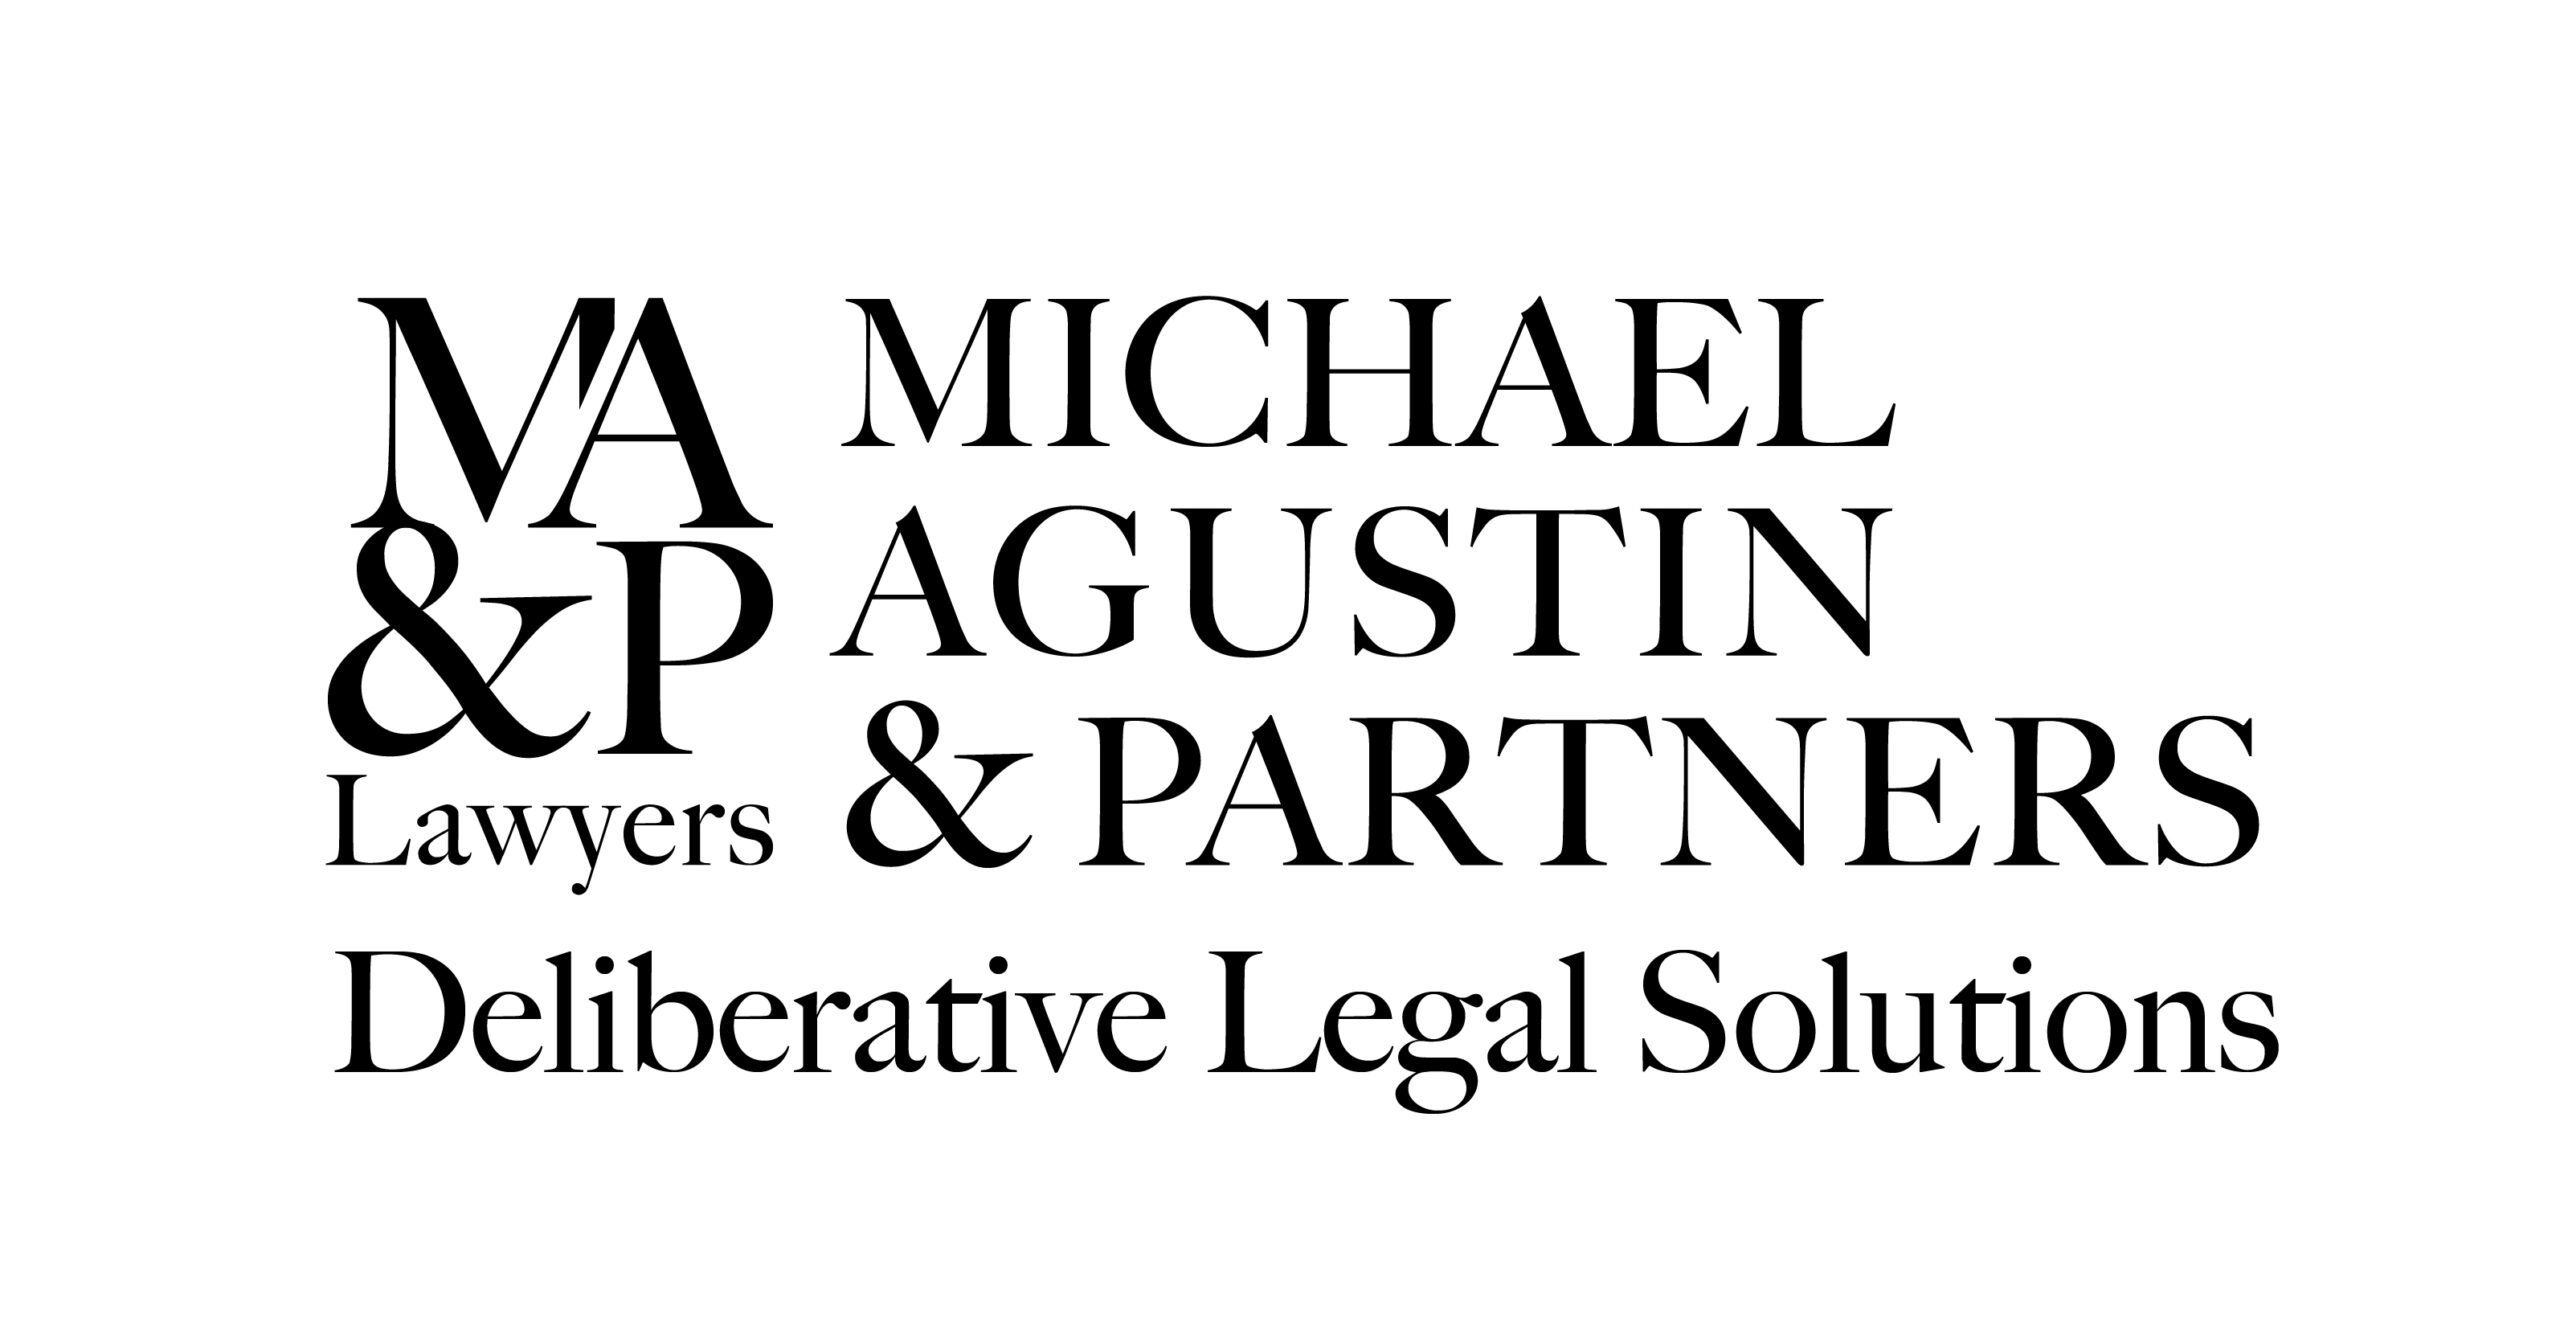 Deliberative Legal Solutions